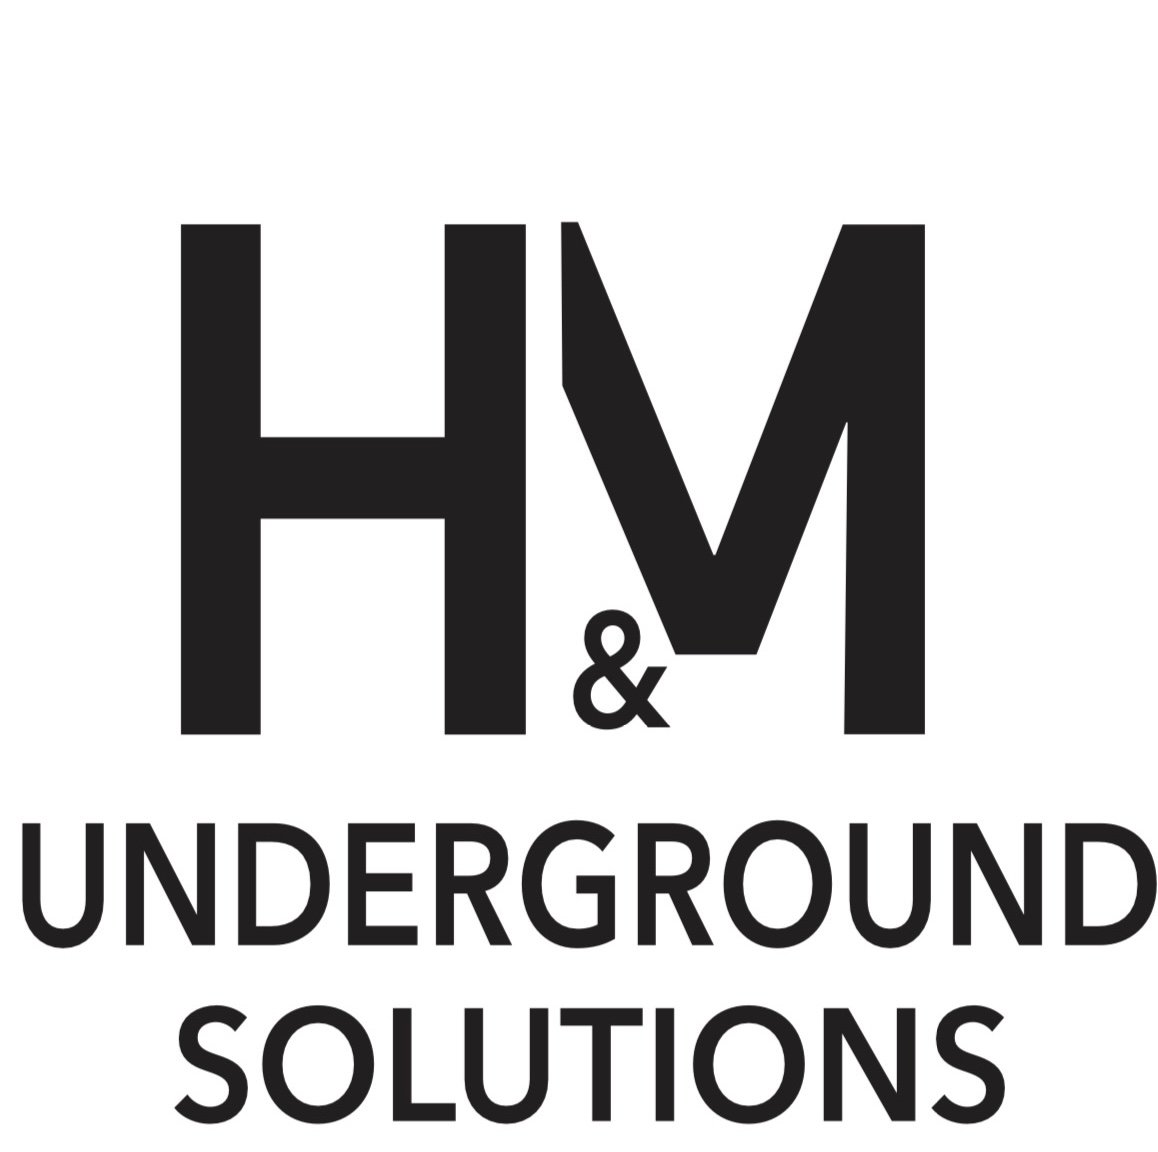 H&M Underground Solutions Logo